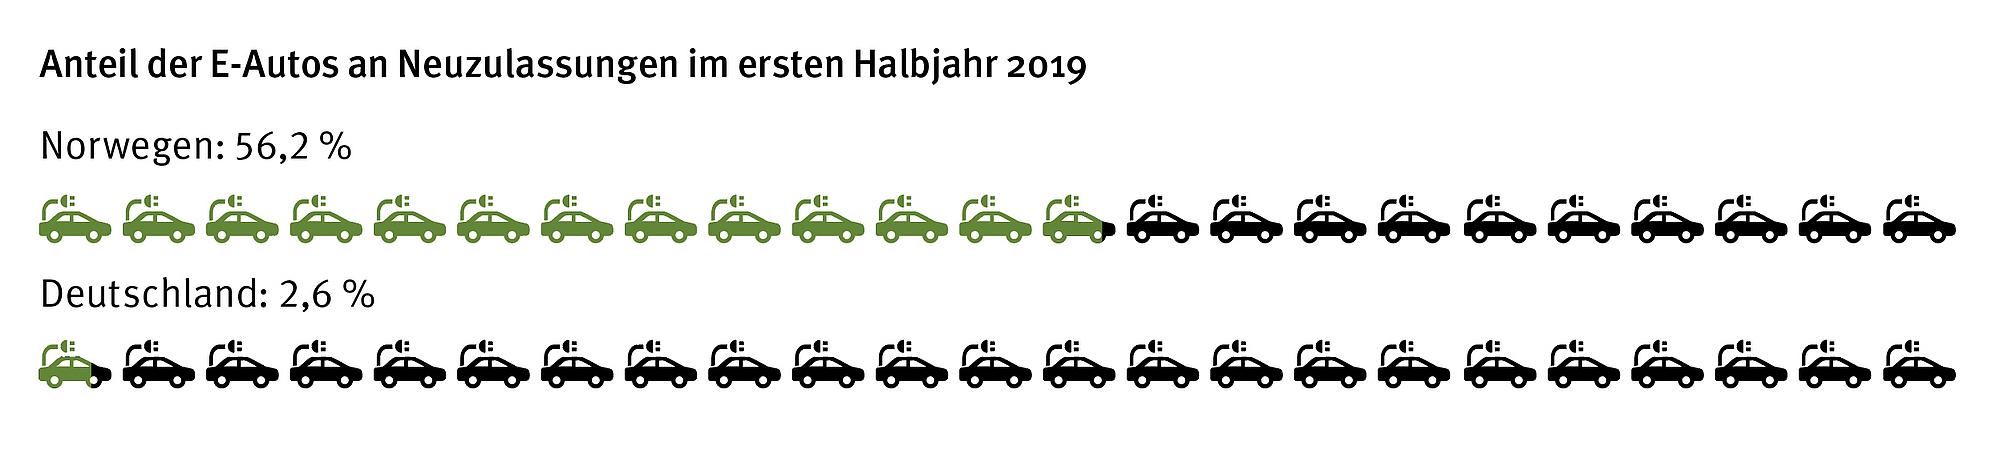 Grafik Anteil der E-Autos an Neuzulassungen im ersten Halbjahr 2019. Vergleich Deutschland und Norwegen.